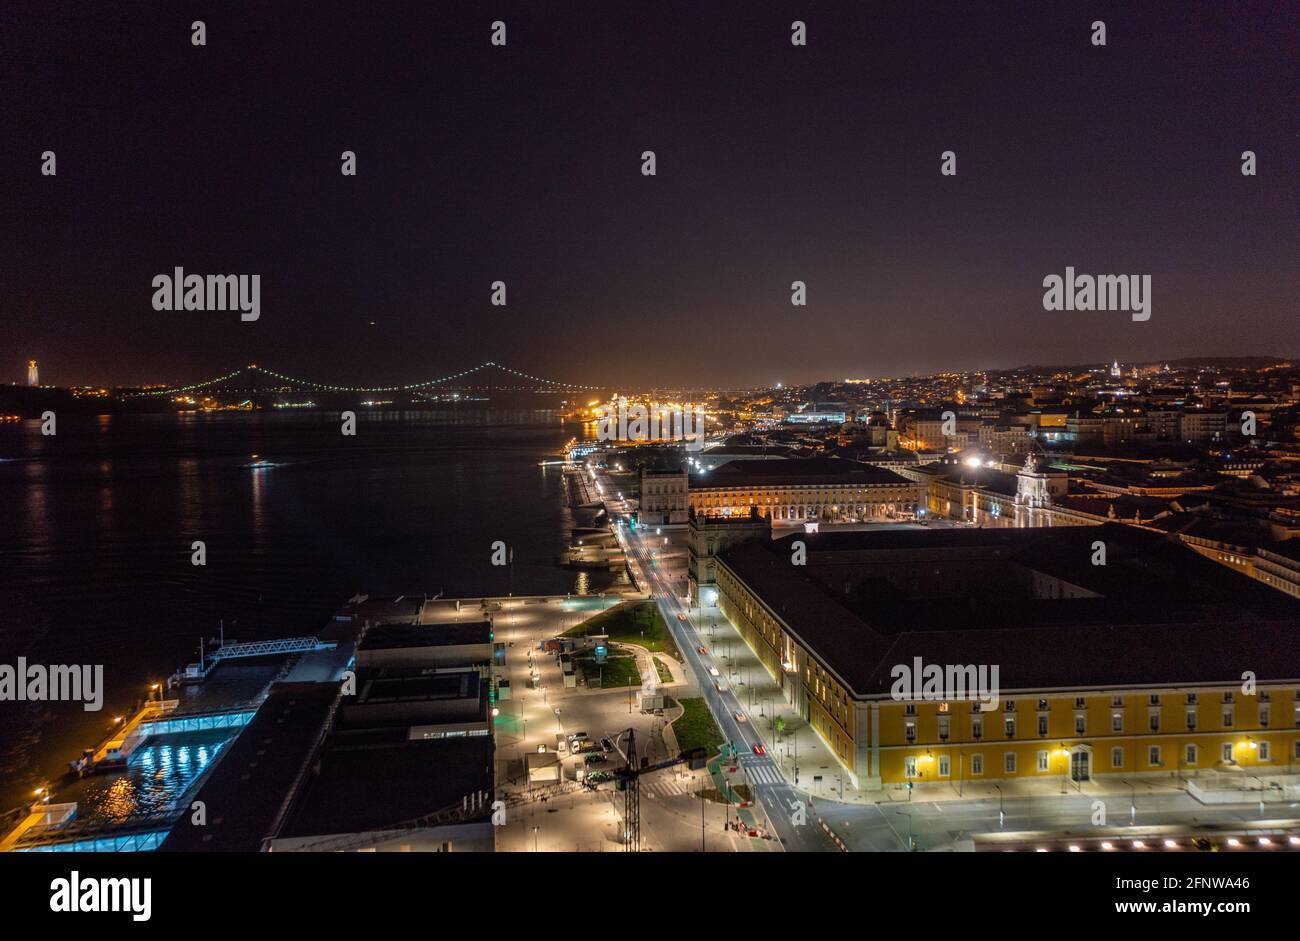 Drohnenansicht der Nachtstadt Lissabon, Portugal. Beleuchtete Gebäude am Flussufer. Leichte Kontur der Brücke im Hintergrund. Stockfoto